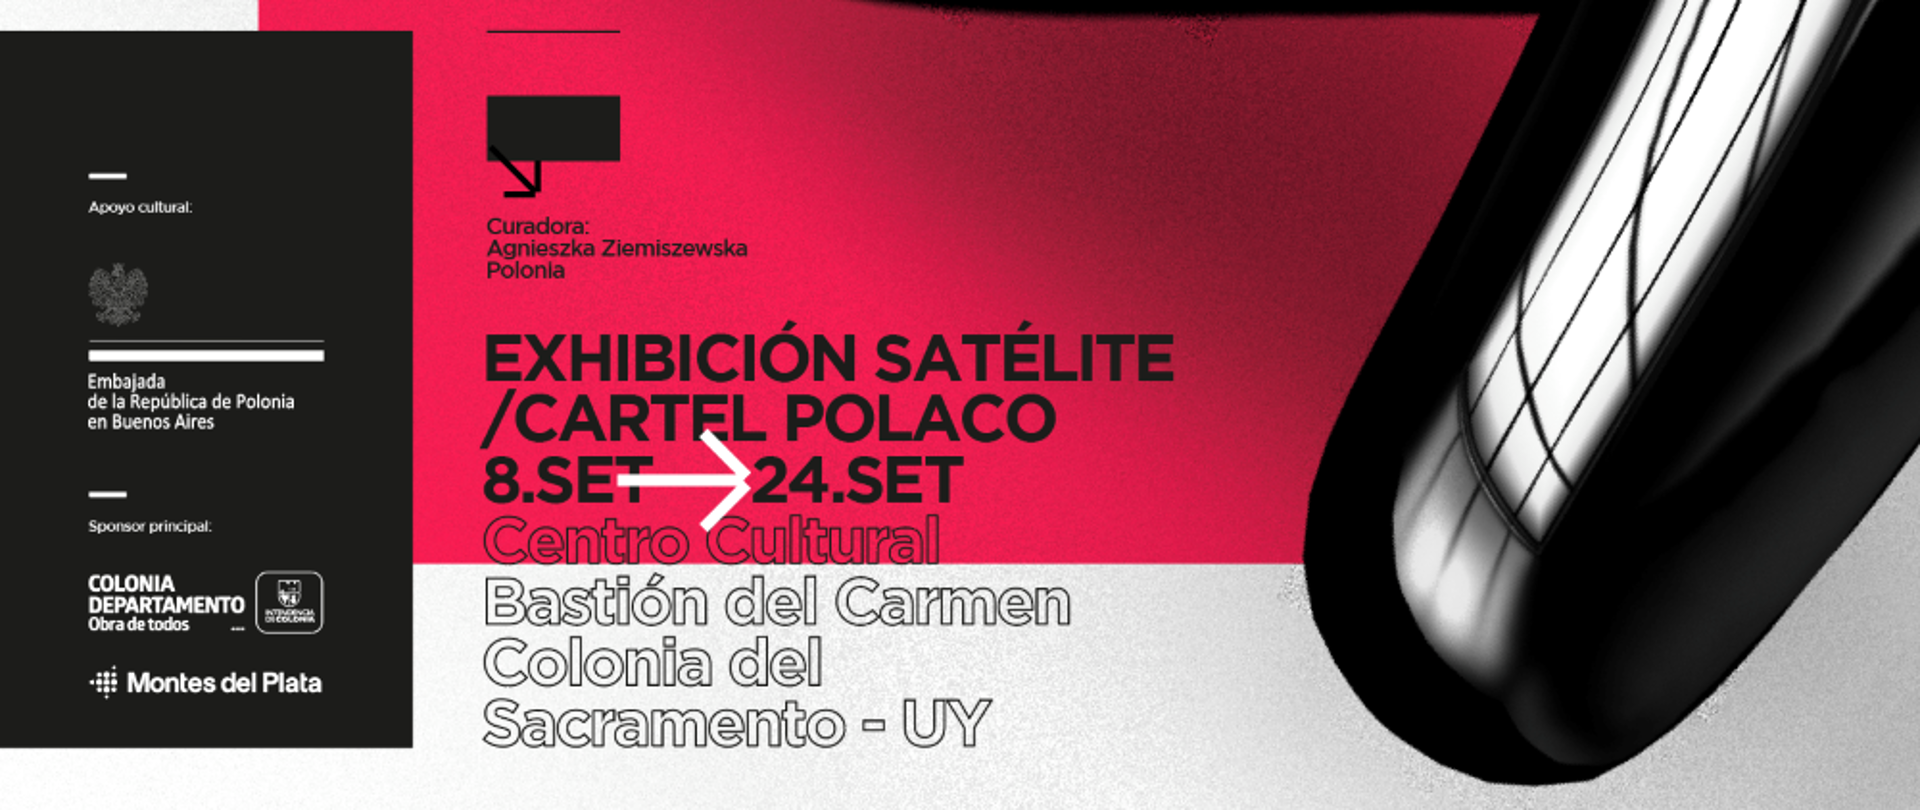 Uwaga, Urugwaj! Już niedługo w Centrum Kultury Bastión del Carmen w Colonia del Sacramento będzie można zobaczyć wystawę polskich plakatów!